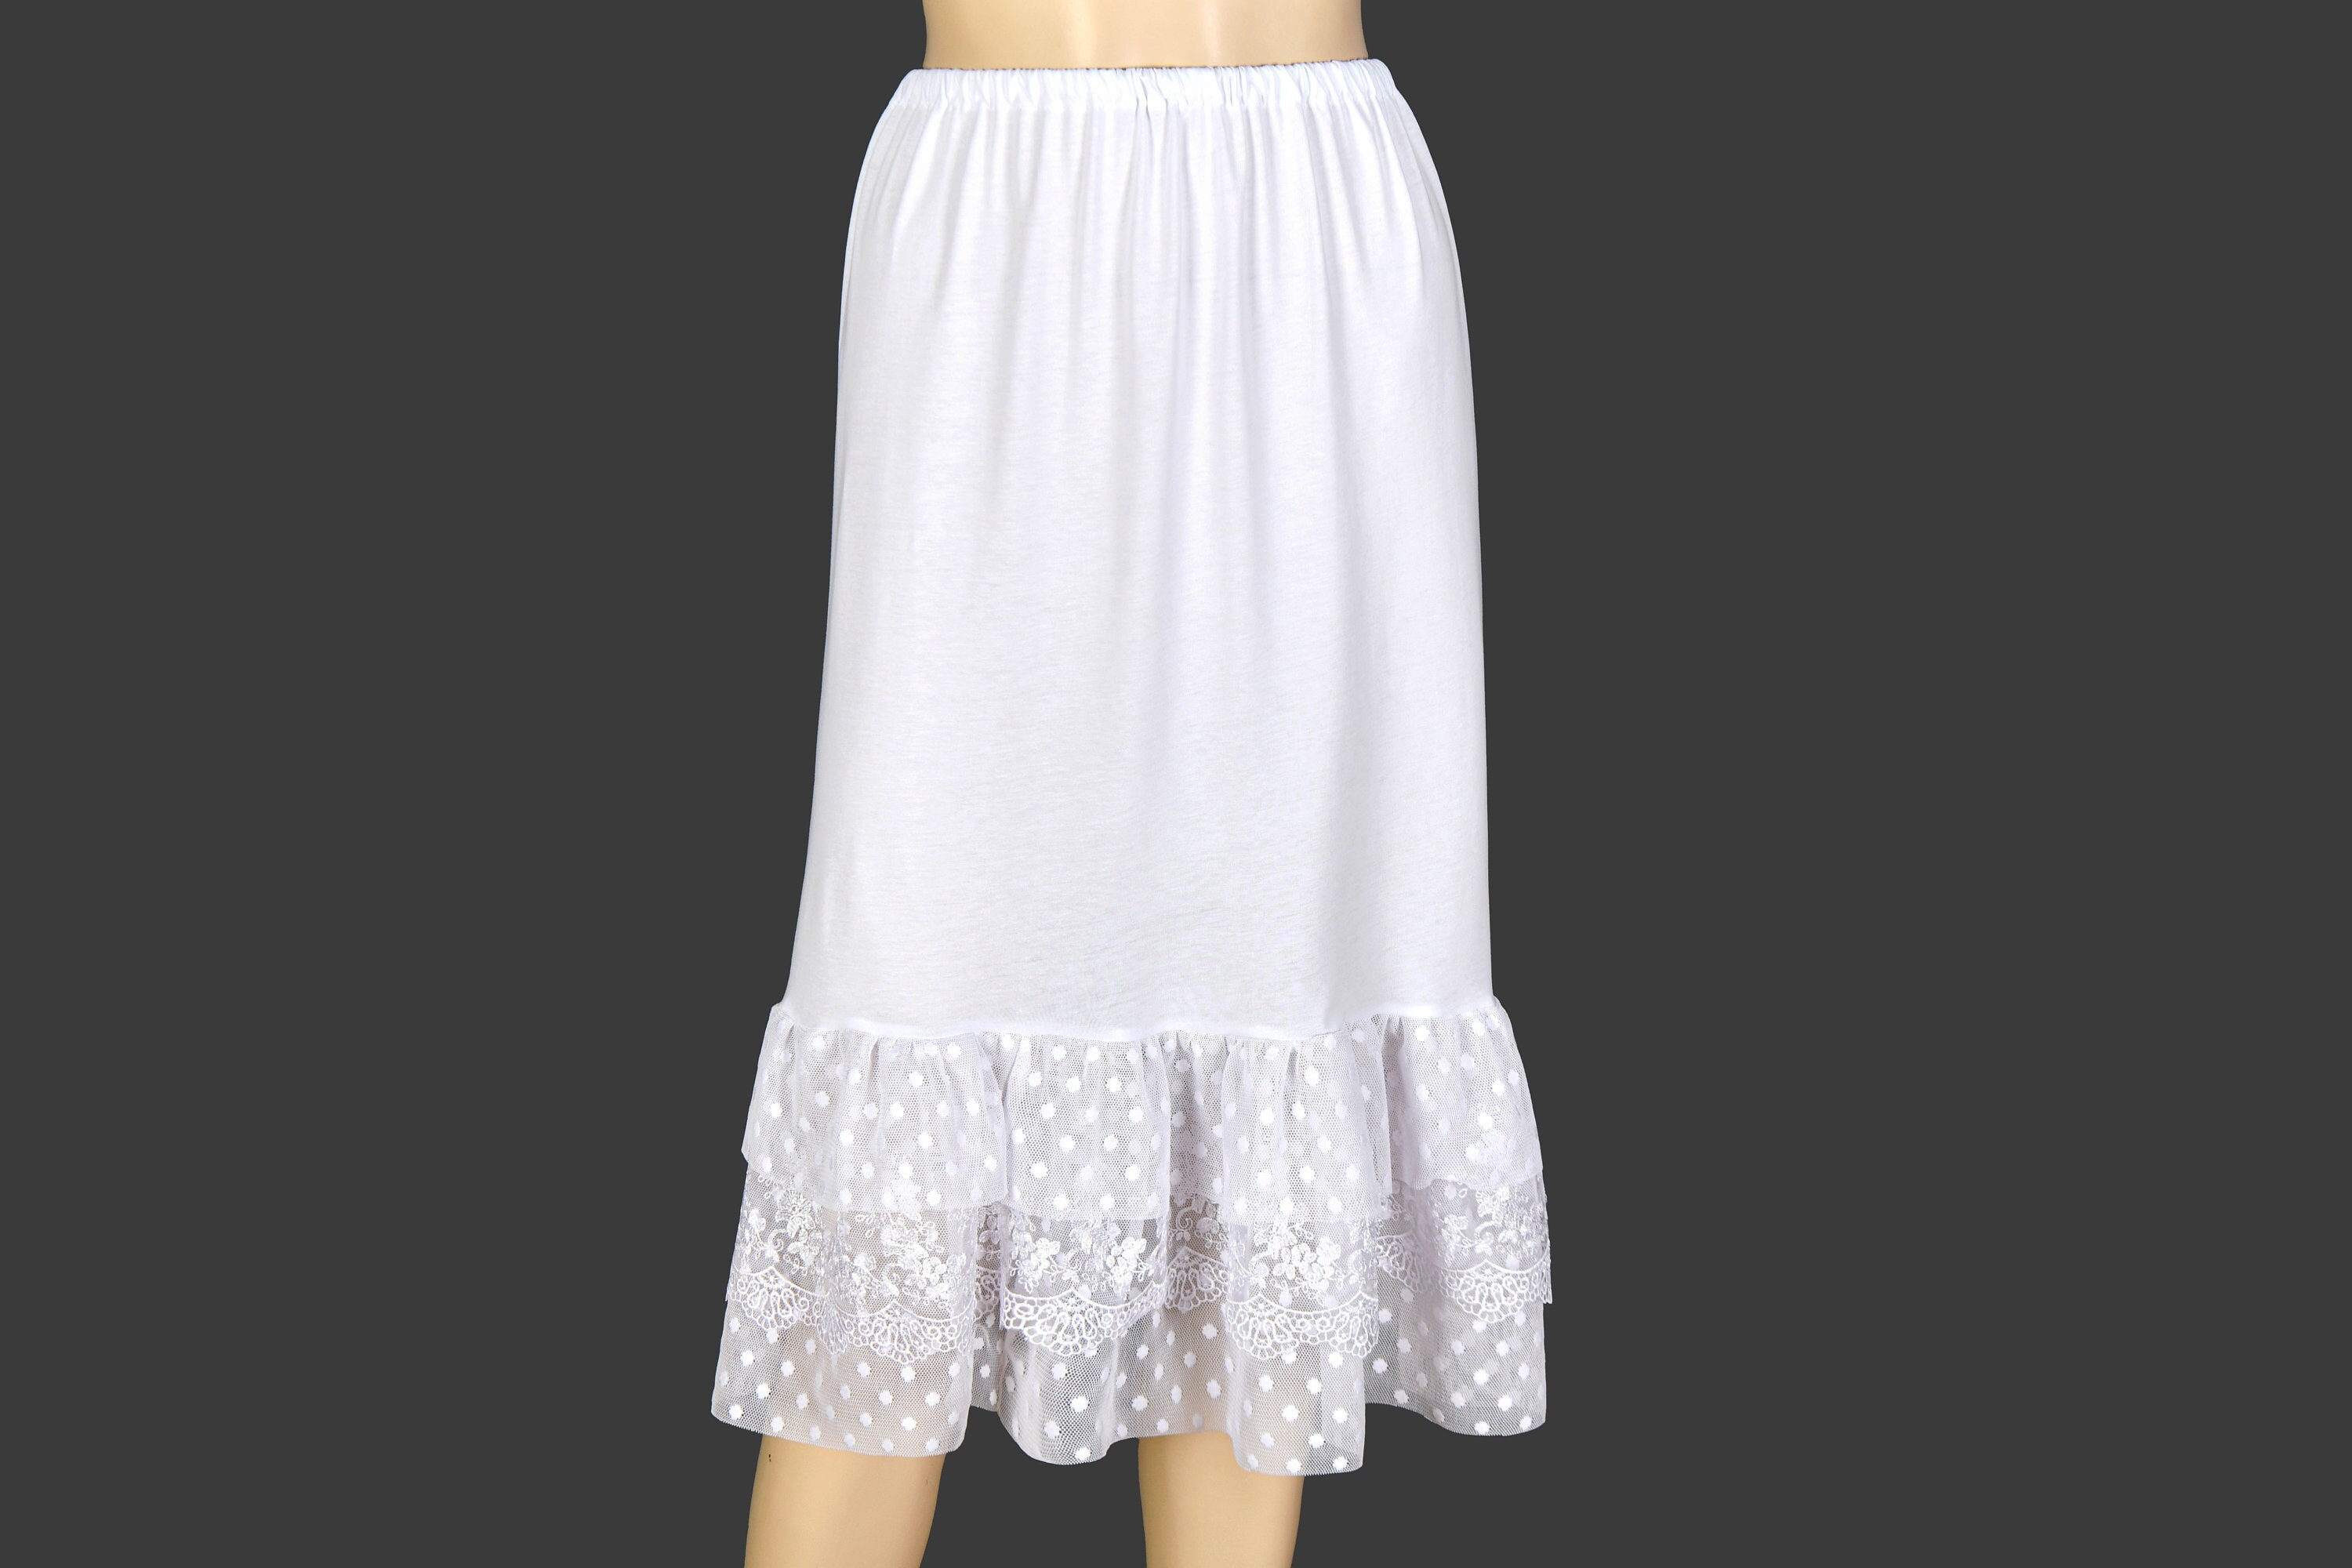 Shirt Extender for Women 2 Pcs Half slip for Leggings Dress Adjustable Fake Layering  Top Lower Shirts for Skirts 